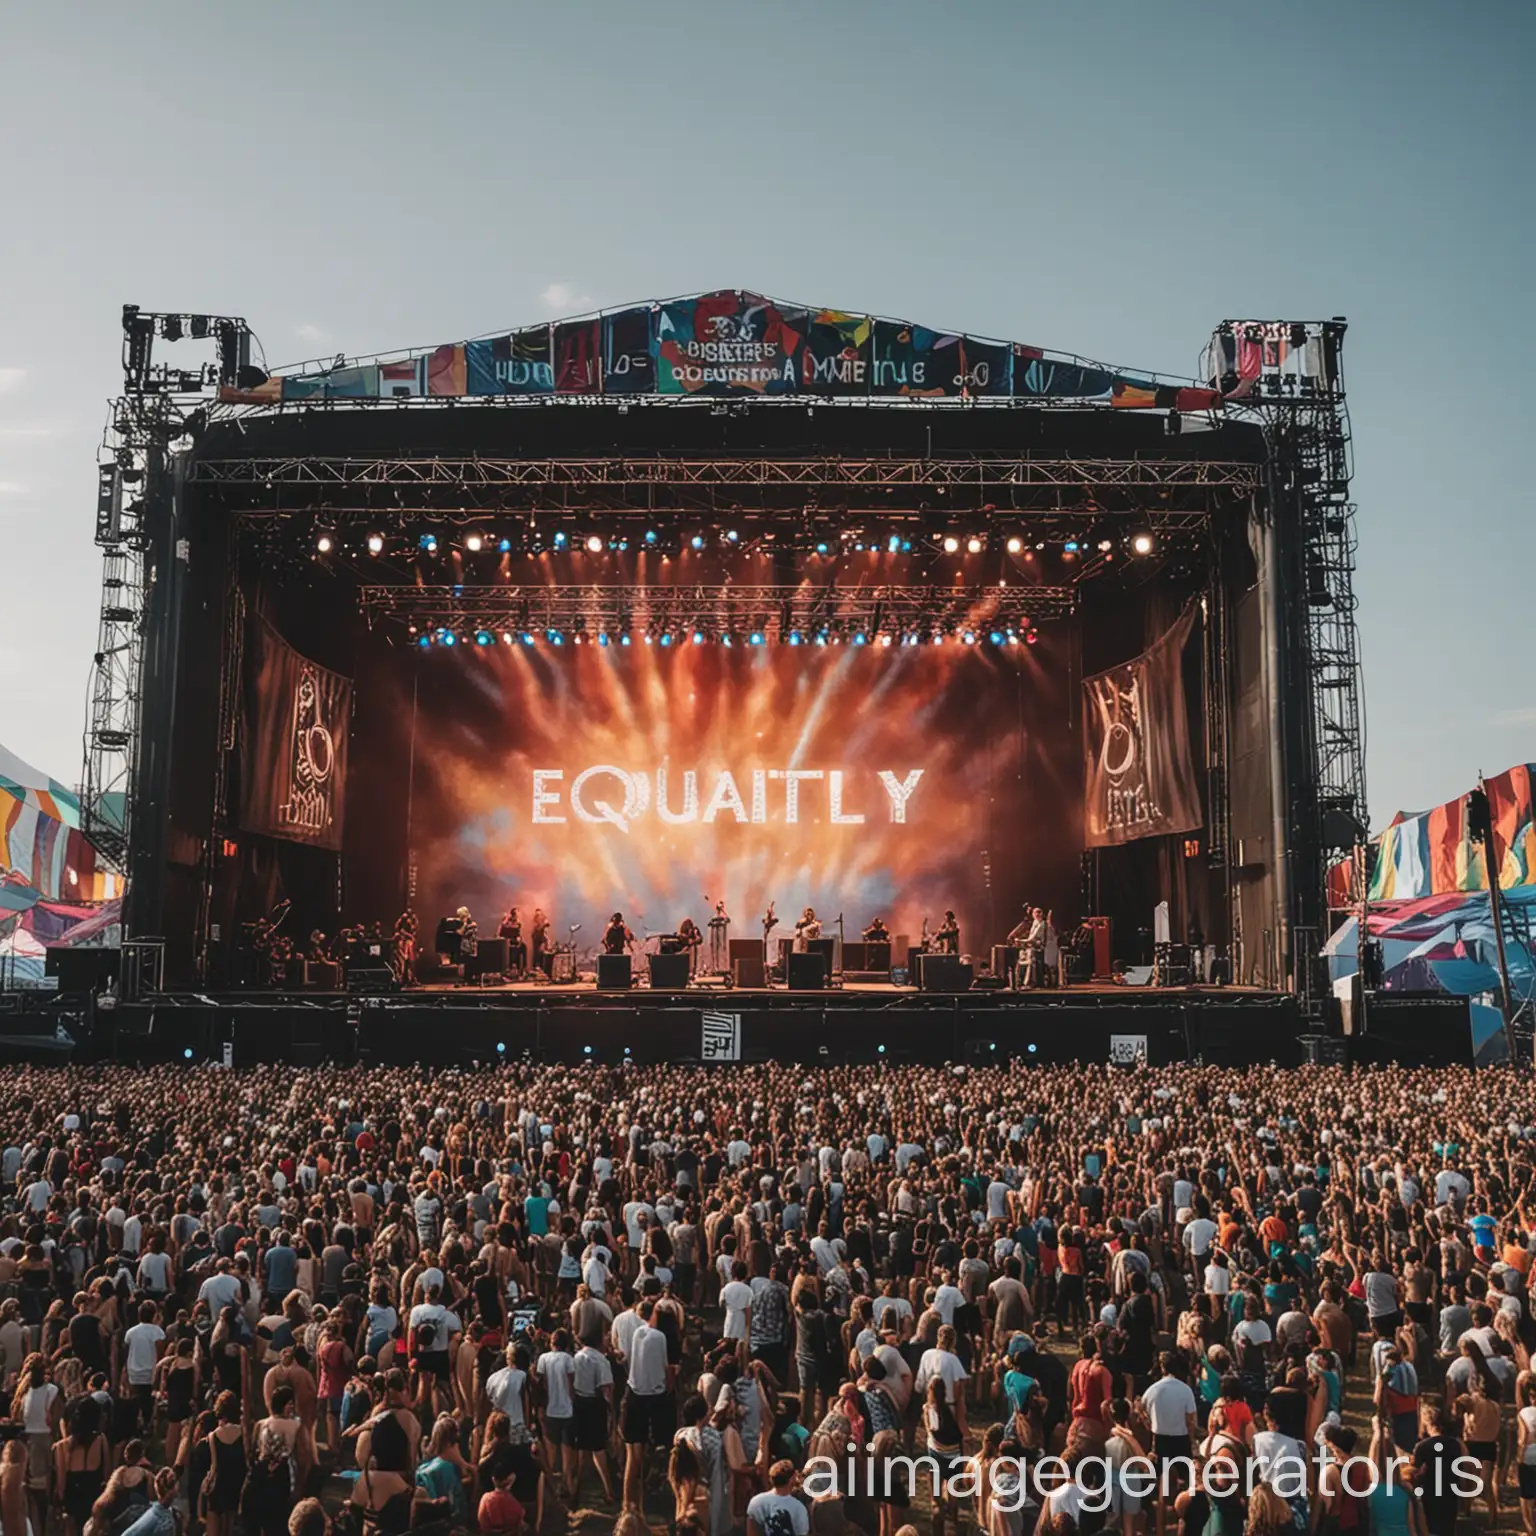 een podium van een muziekfestival die als thema gelijkheid heeft